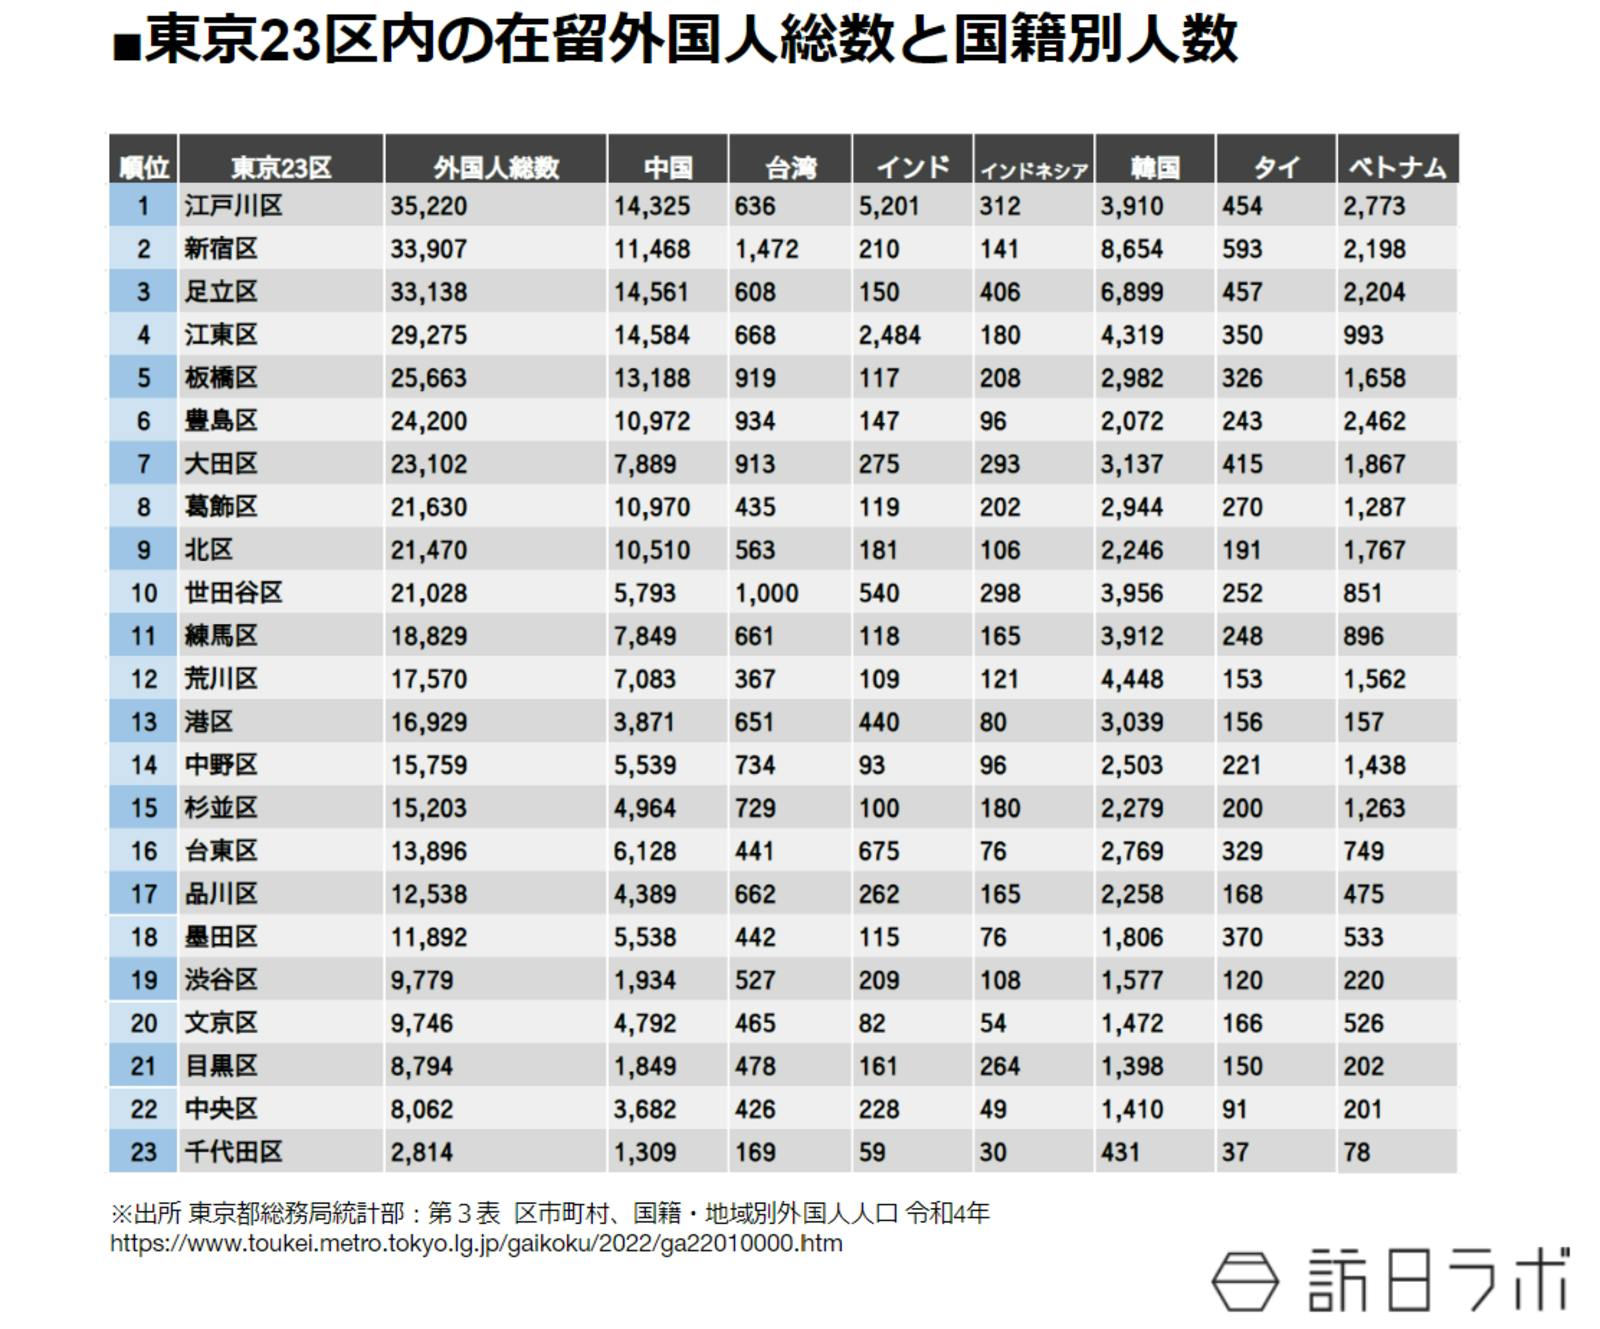 東京23区内の在留外国人総数と国籍別人数：東京都総務局統計部 第三表より